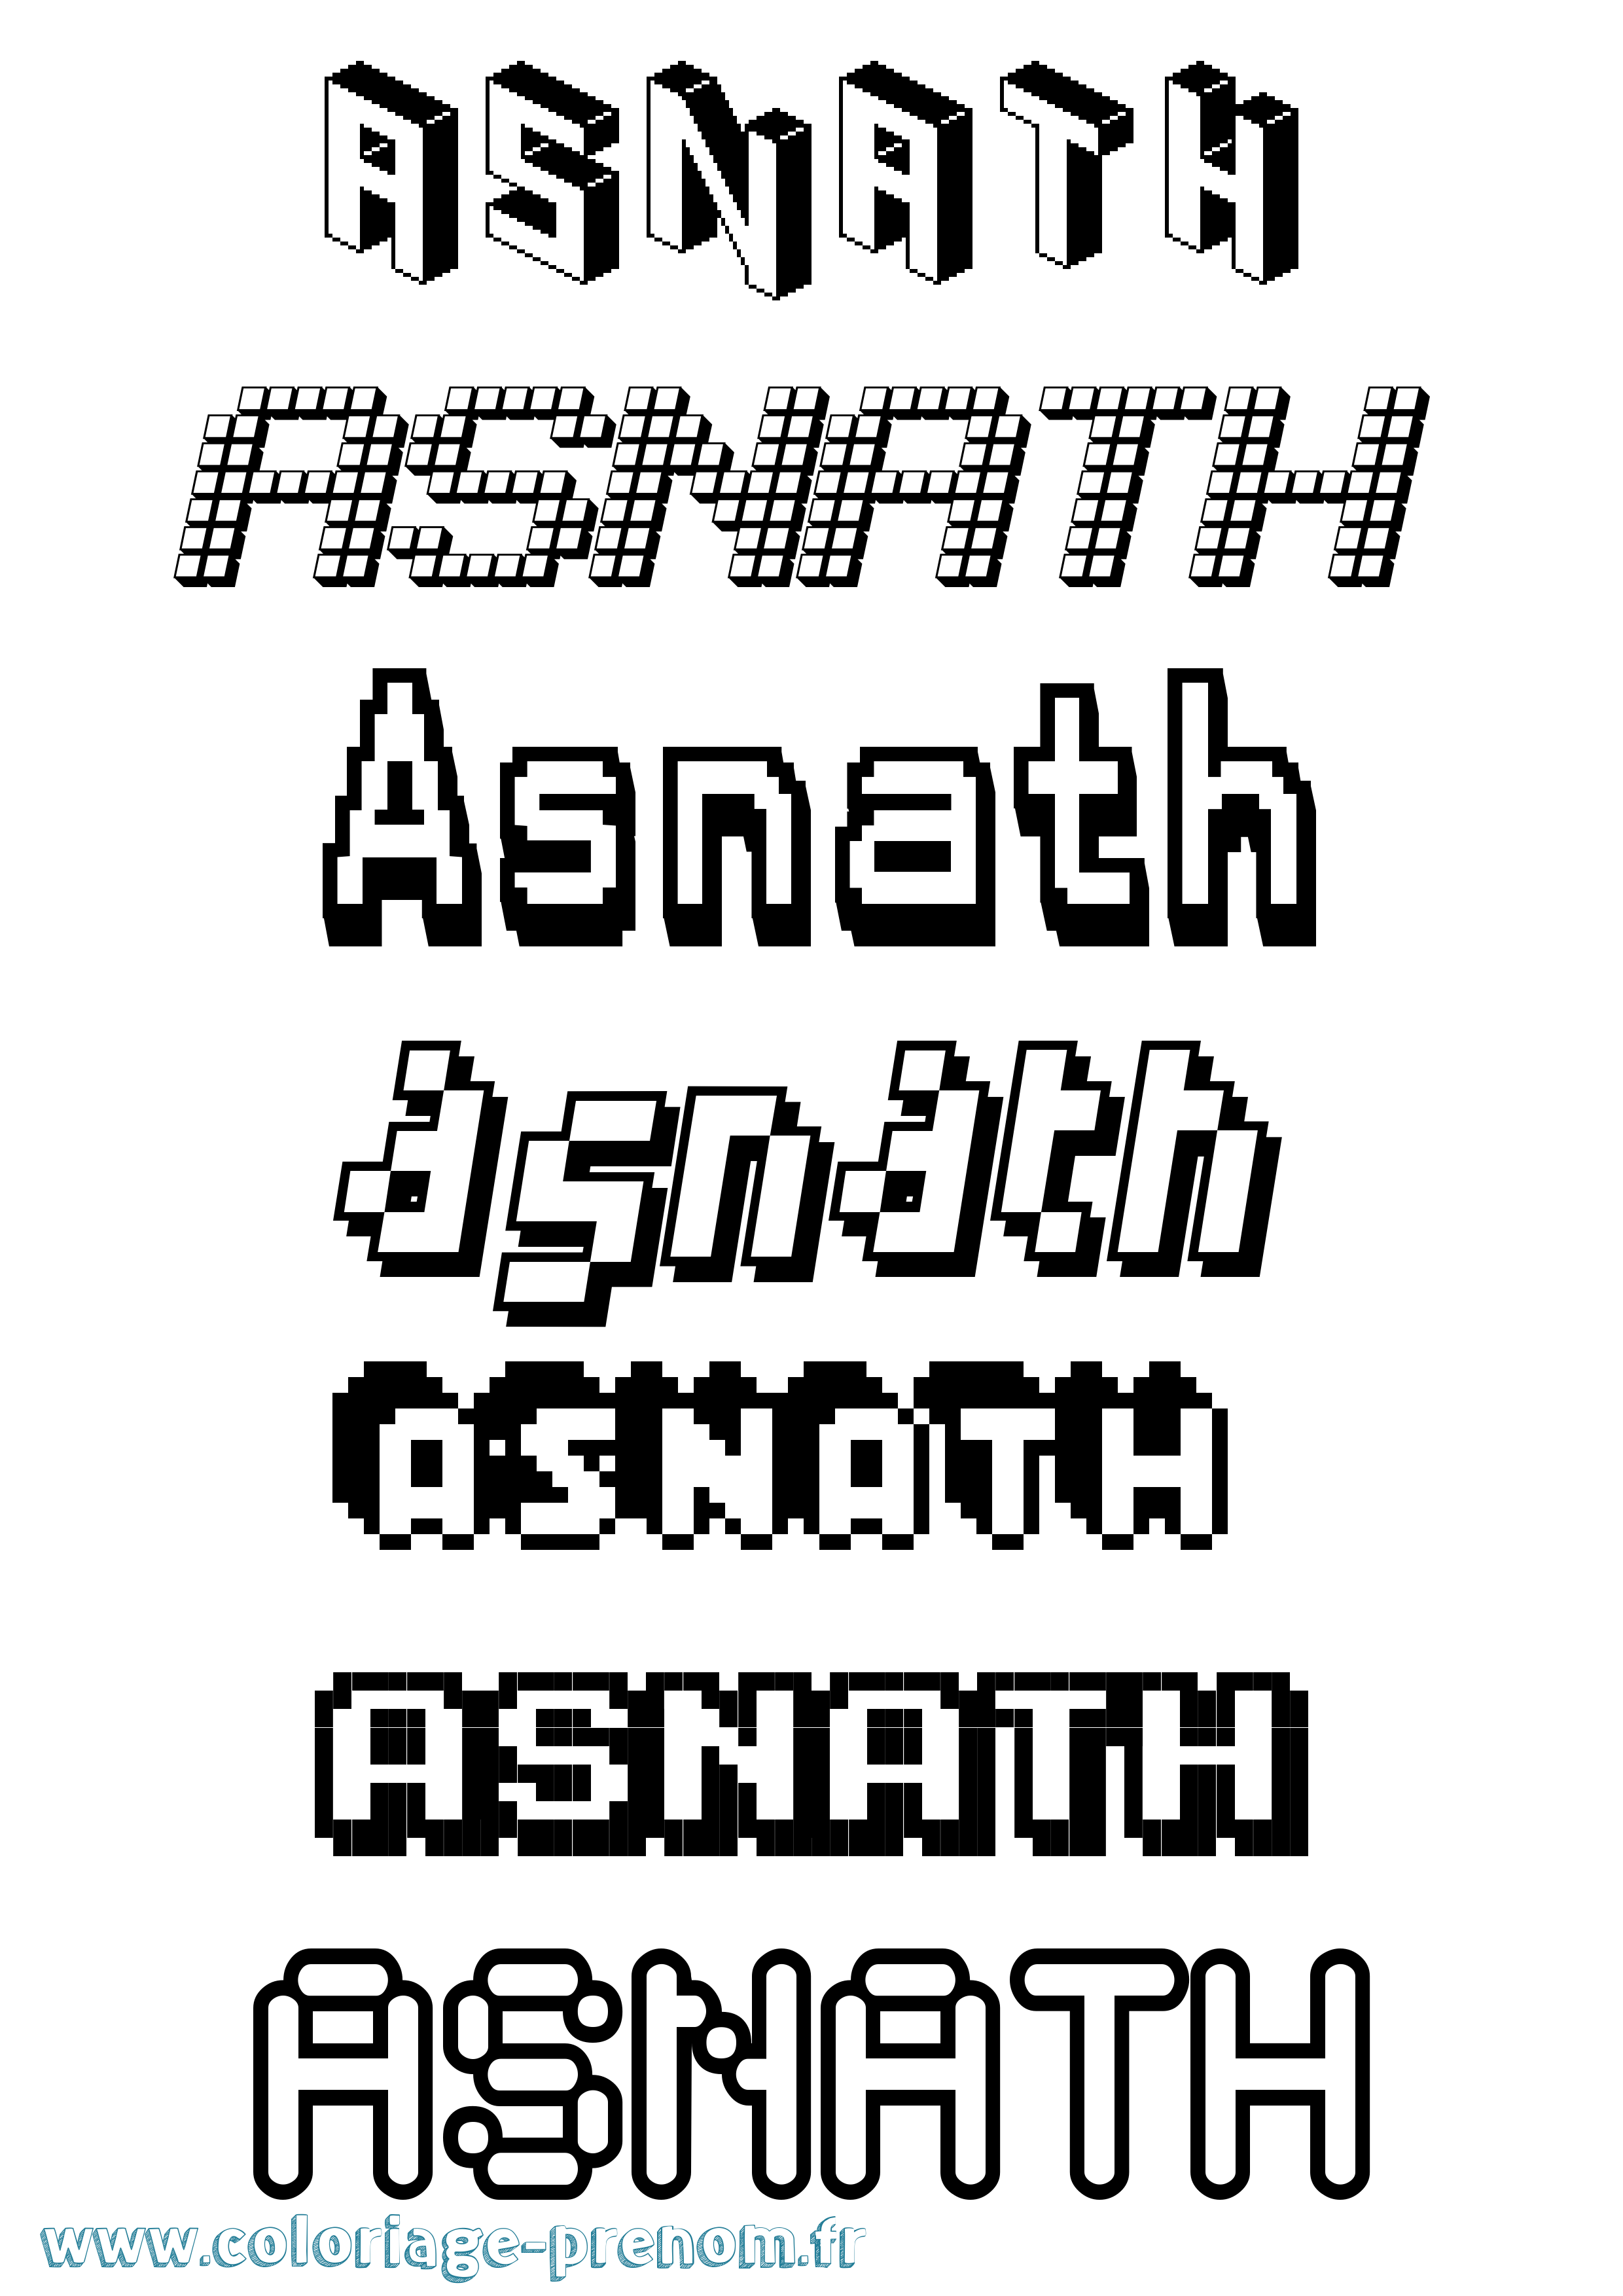 Coloriage prénom Asnath Pixel